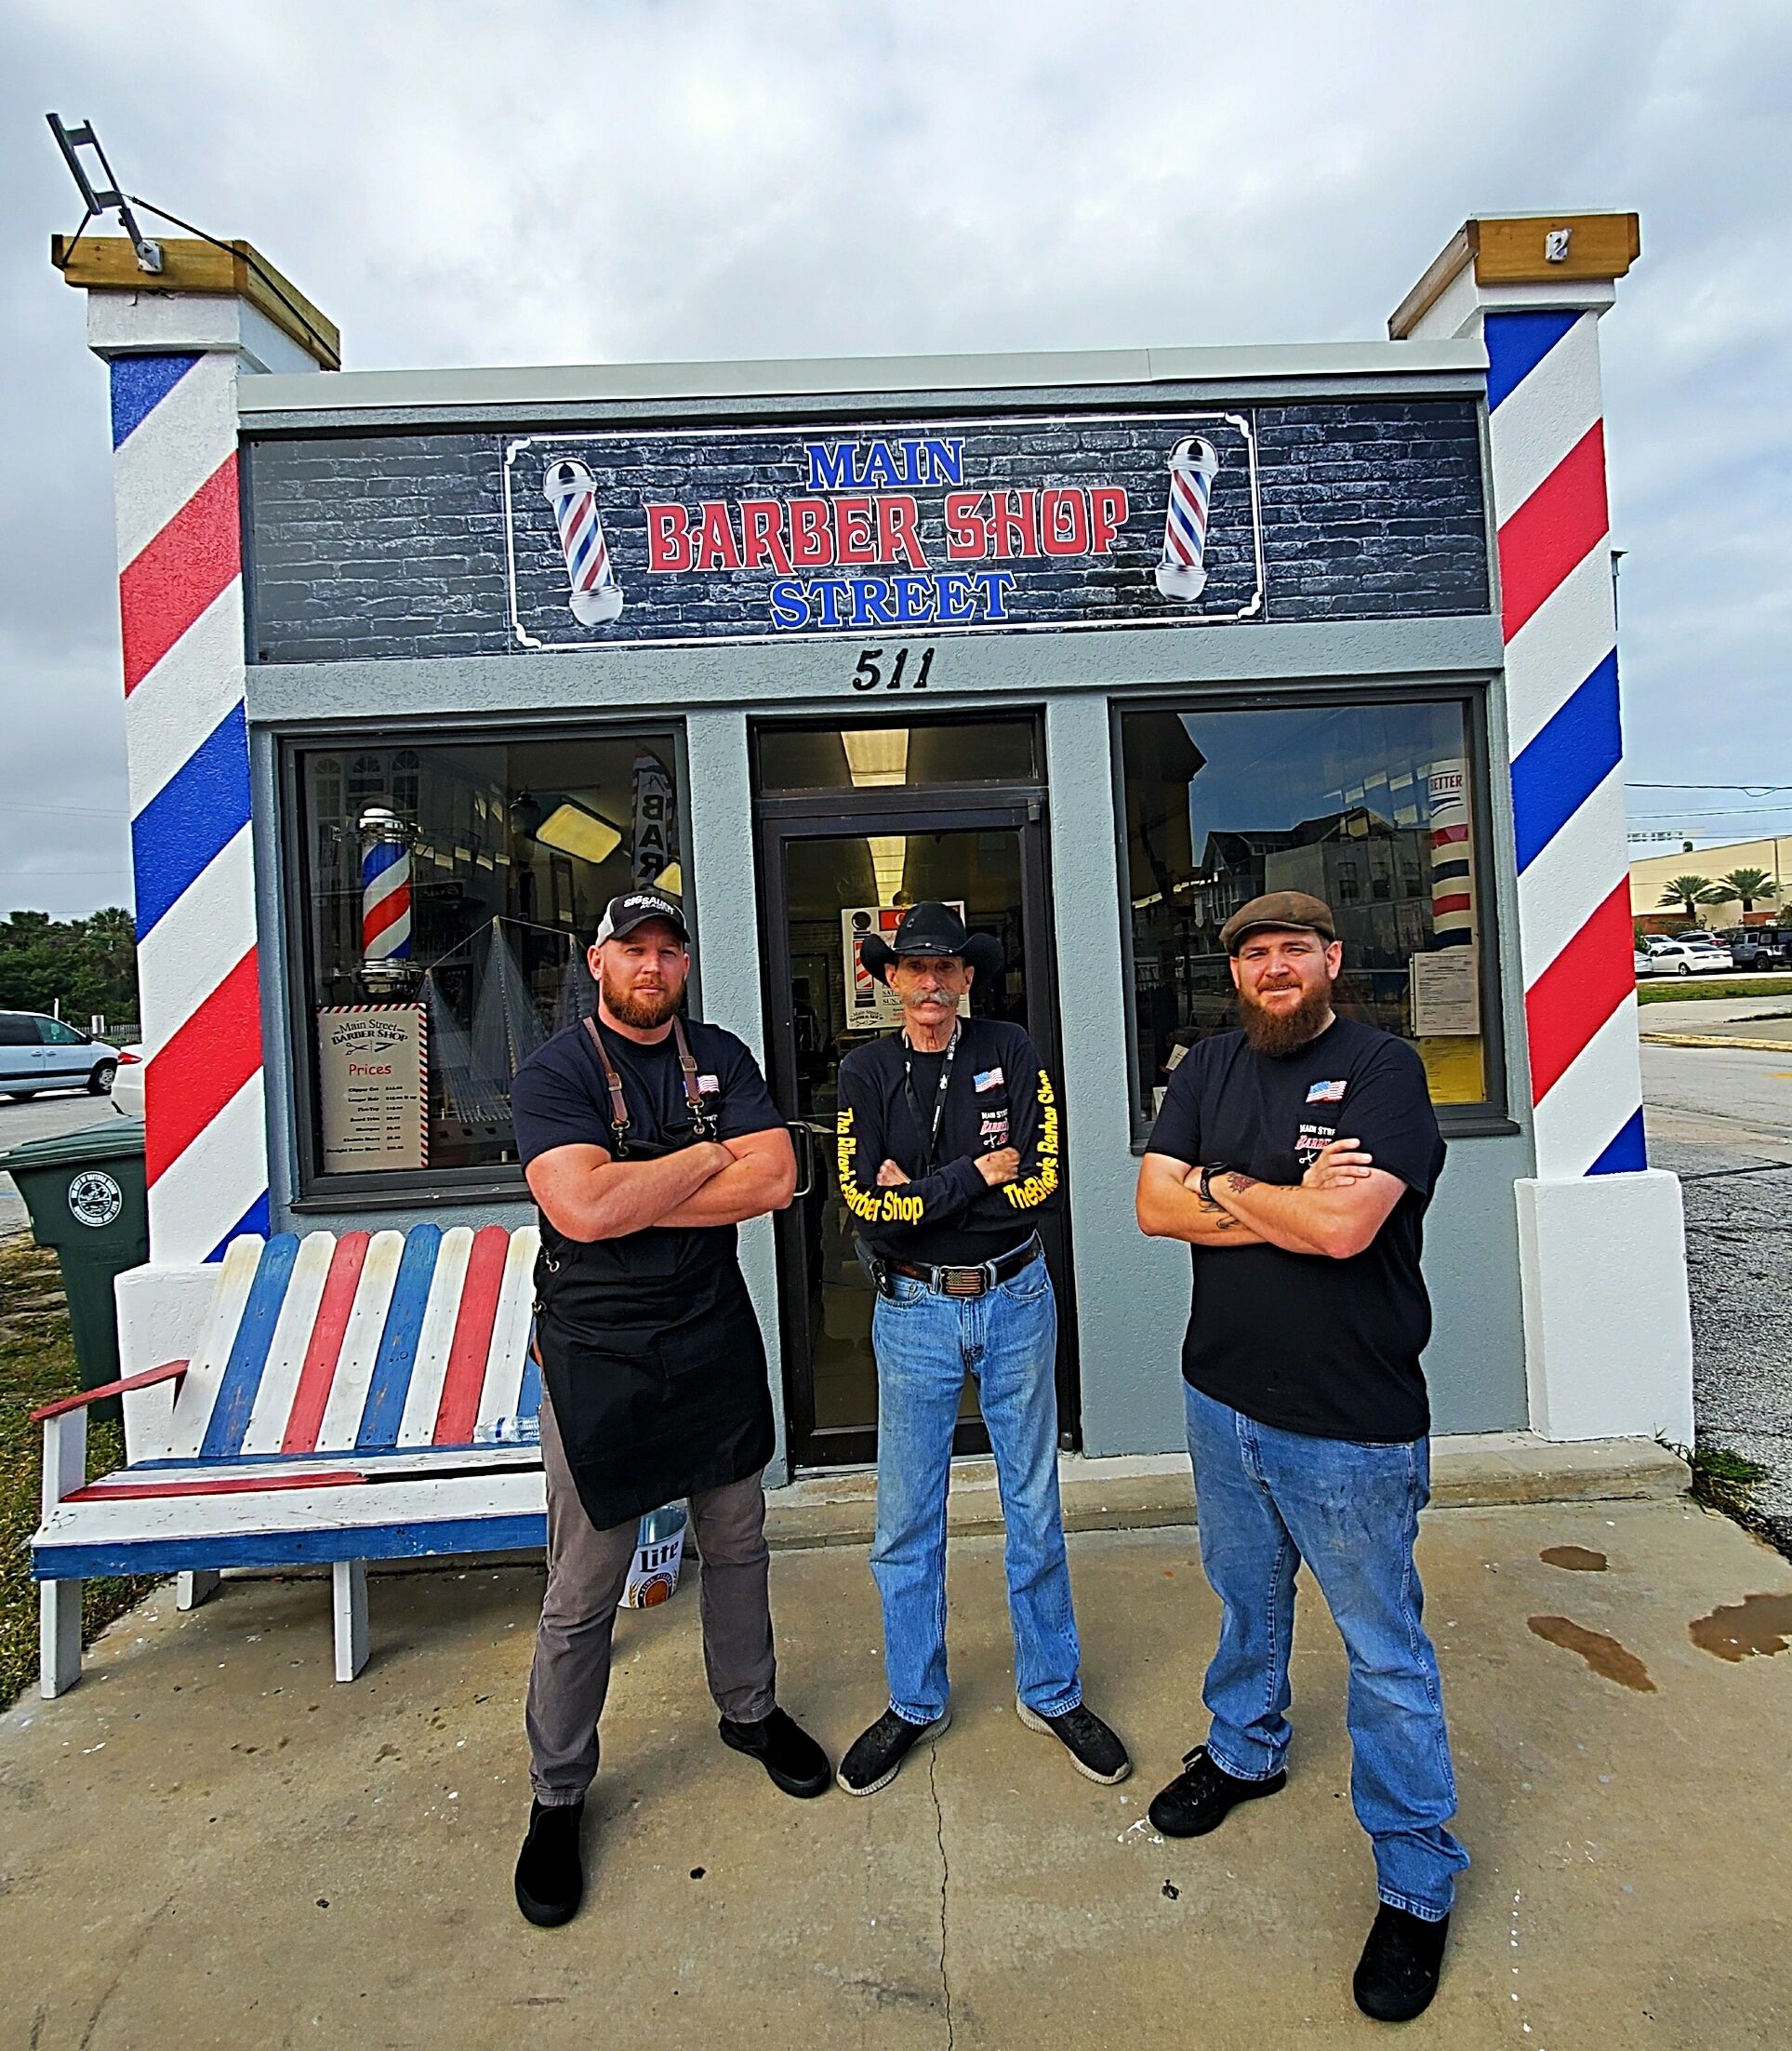 uudgrundelig løn Udvidelse Main Street Barber Shop - Barber Shop - Daytona Beach, Florida